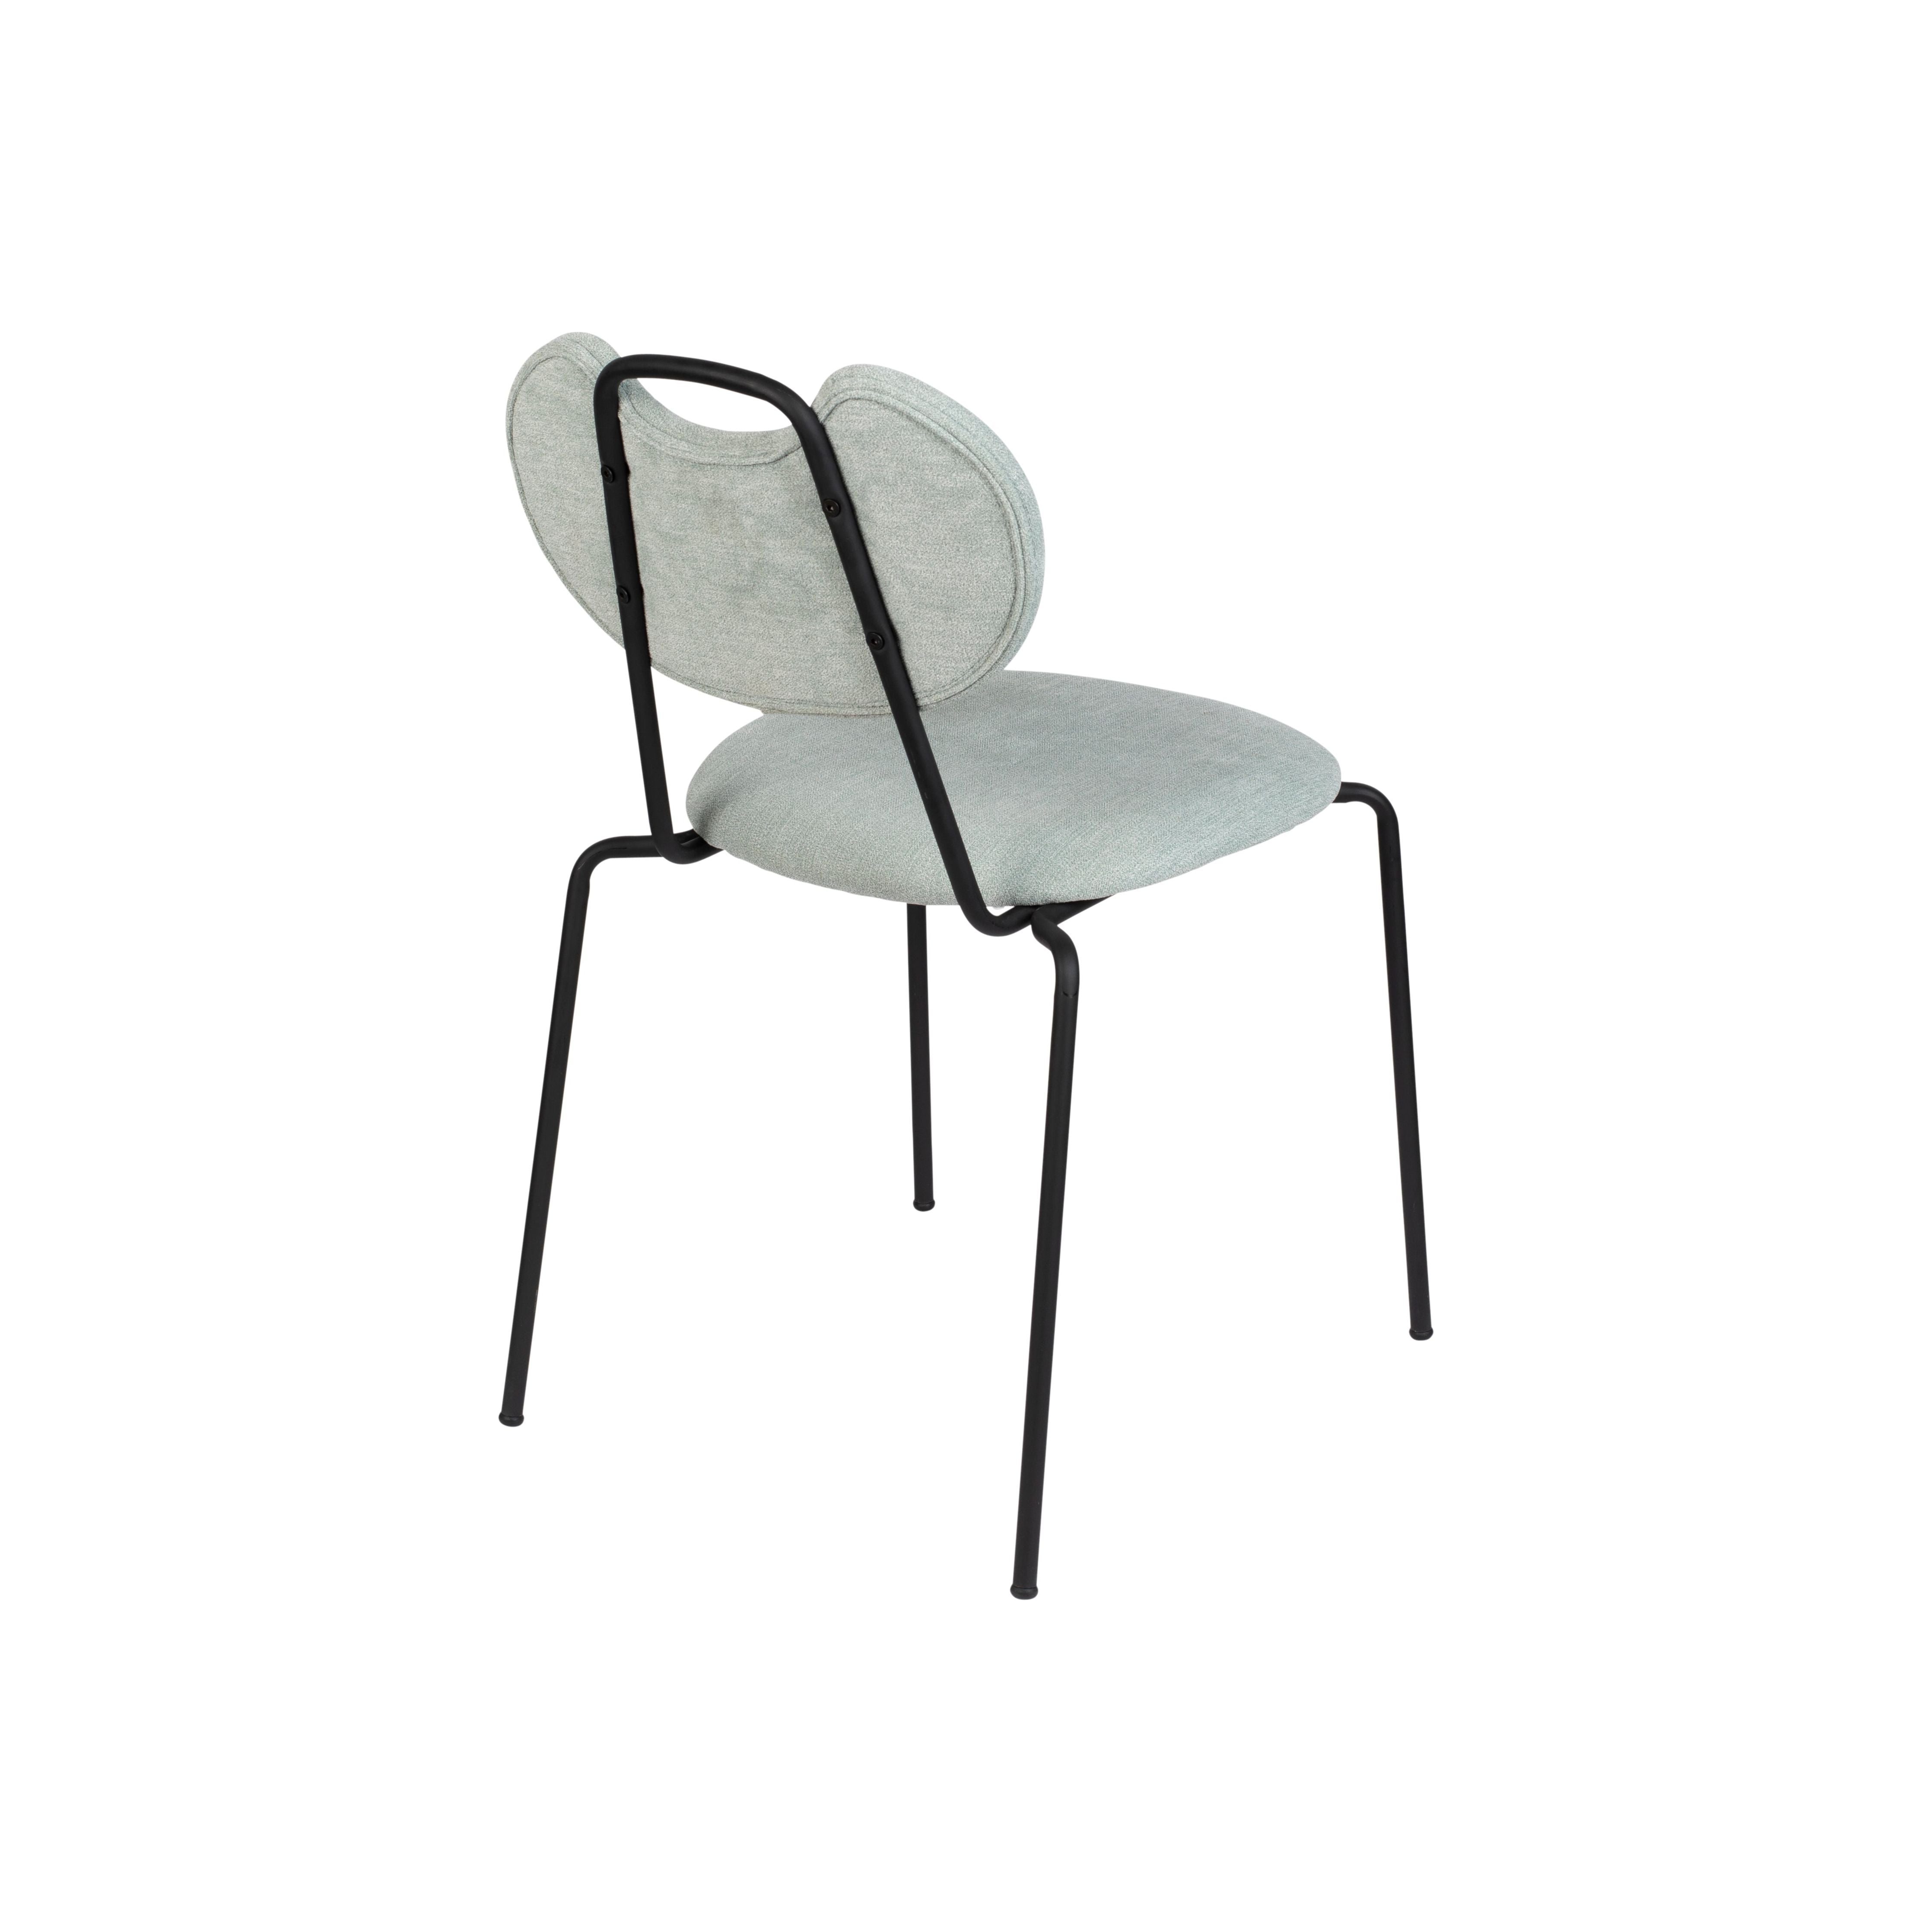 Chair aspen light green | 2 pieces